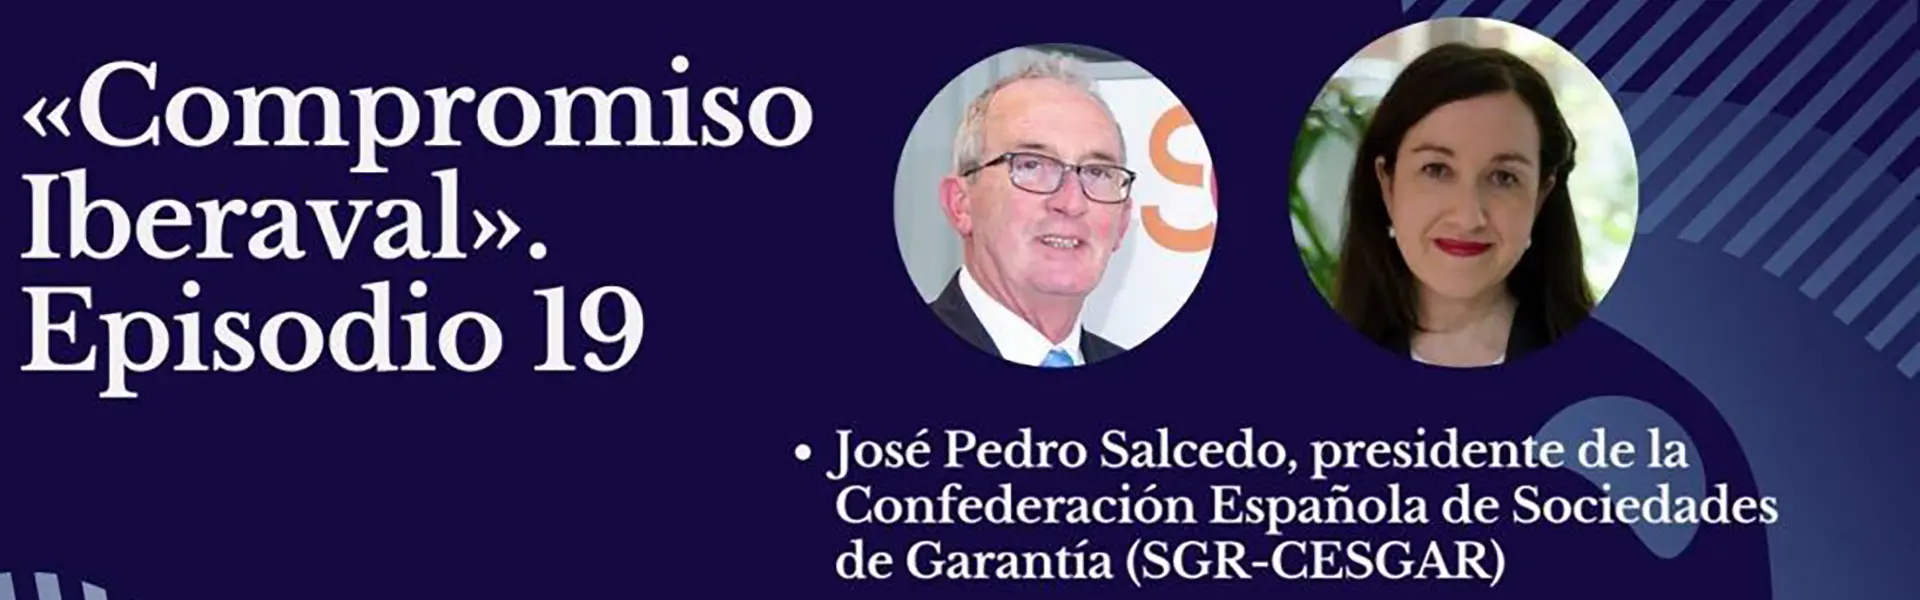 Entrevista al presidente de SGR Cesgar, José Pedro Salcedo, en el podcast de Iberaval ultimas noticias